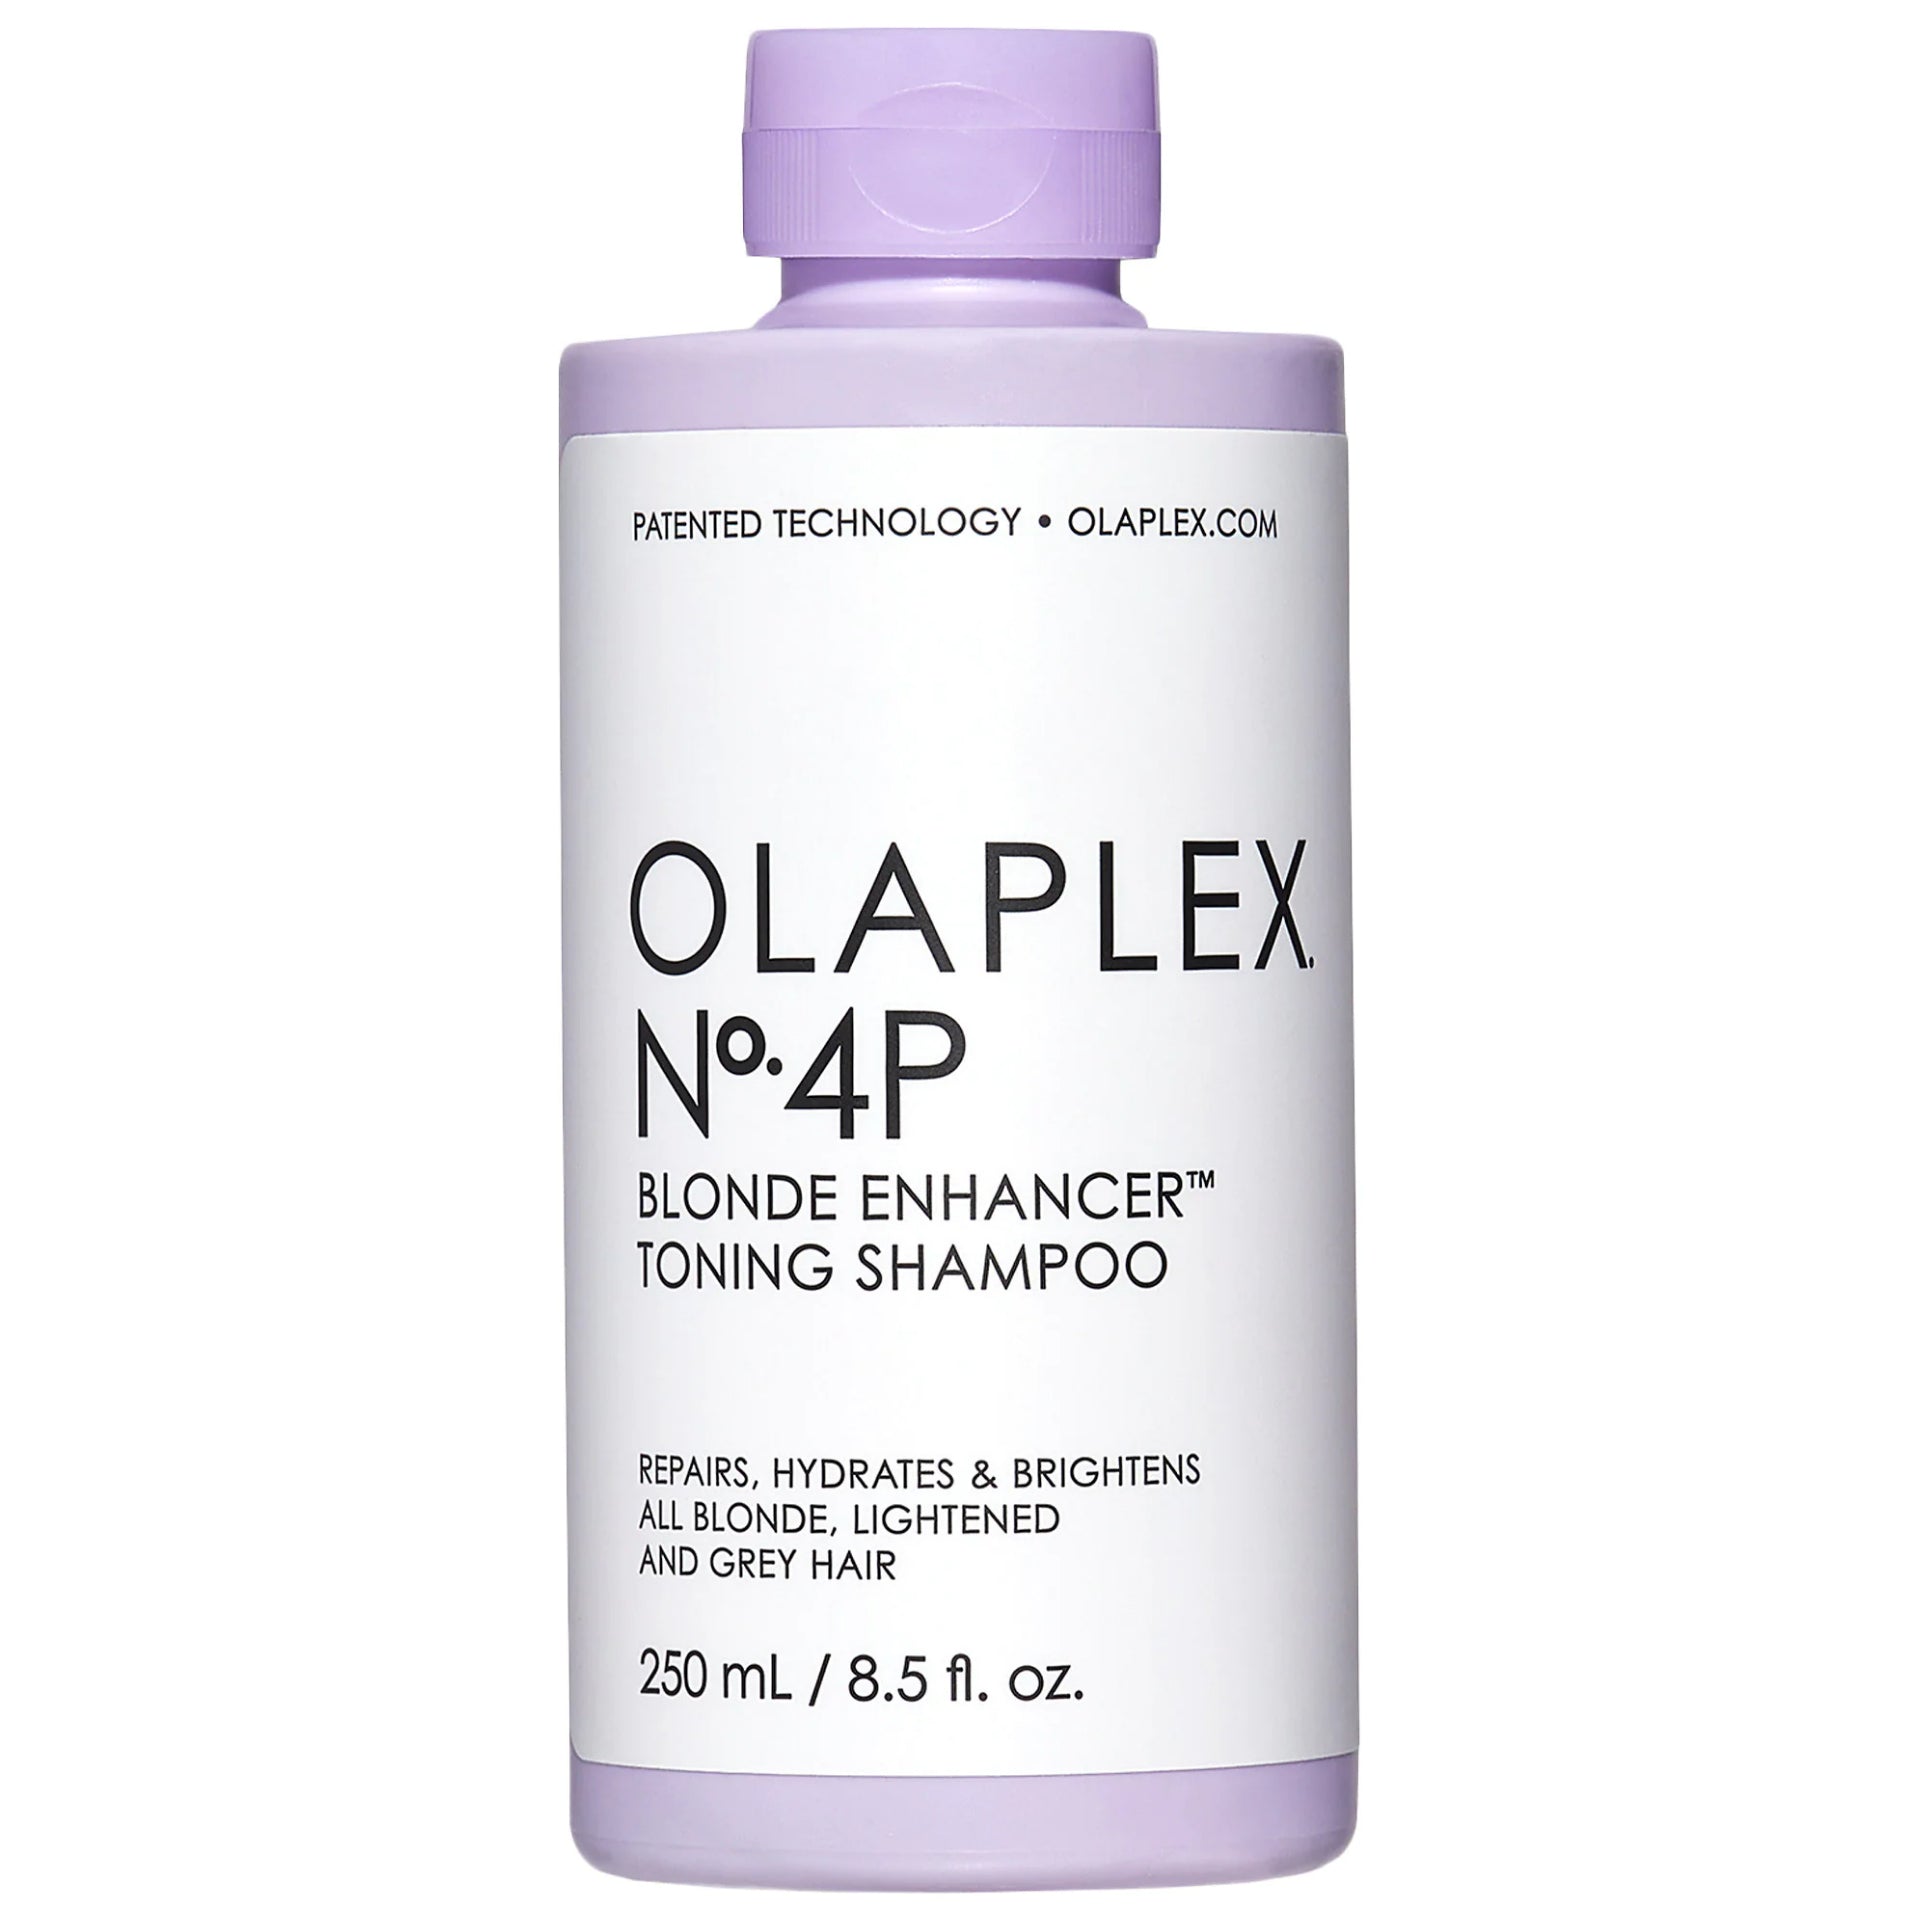 olaplex-n-4p-toning-shampoo-blond-enhancer